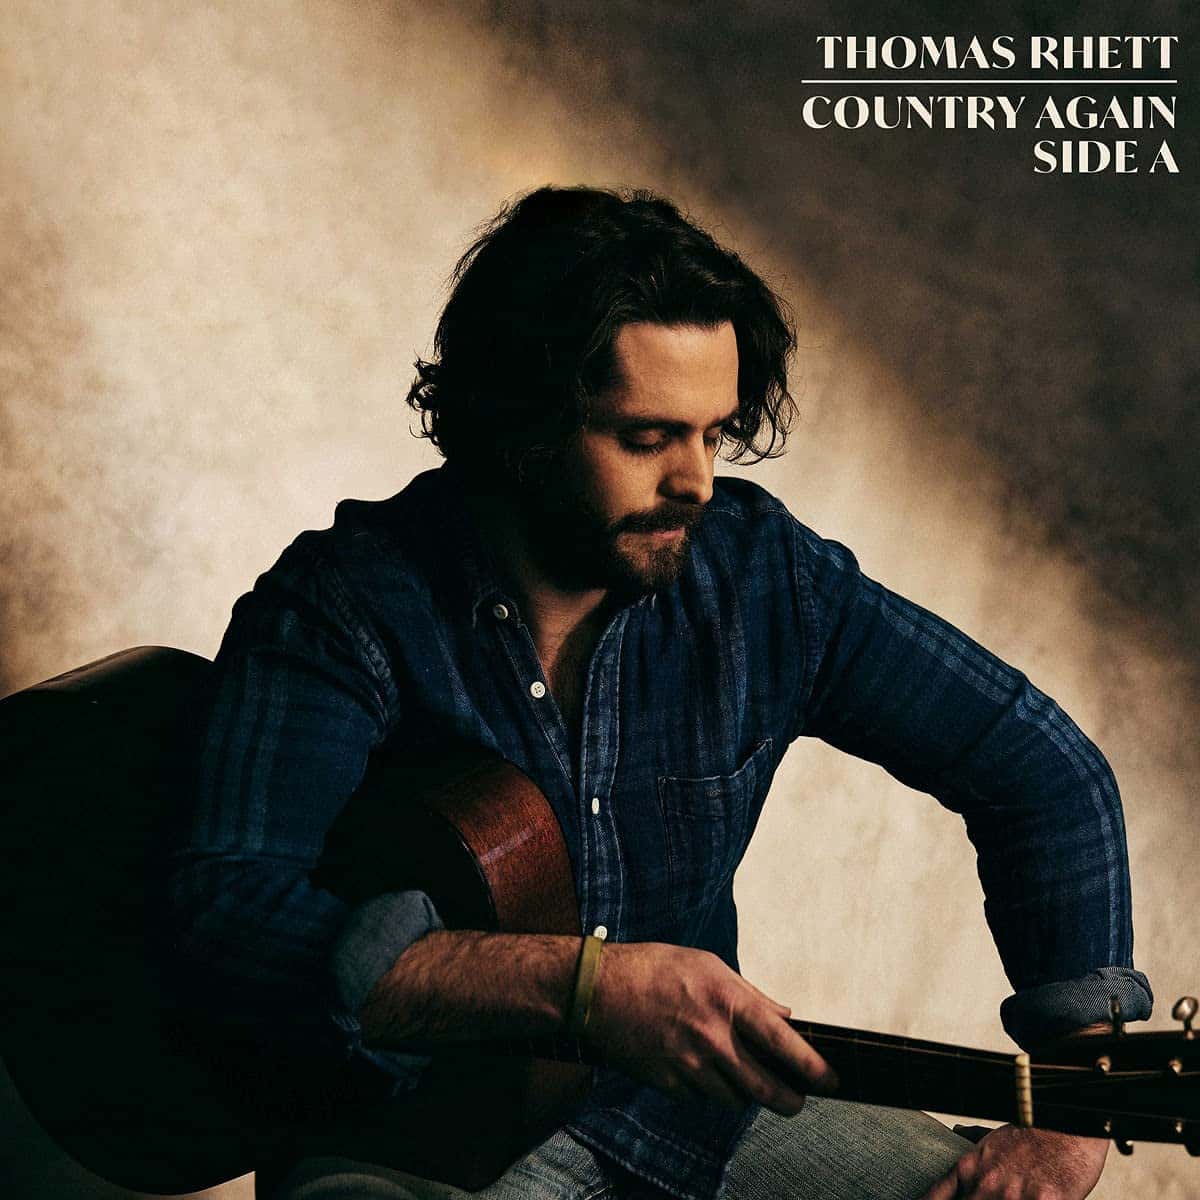 Country Music again Thomas Rhett neues Album "Country Again (Side A)" veröffentlicht